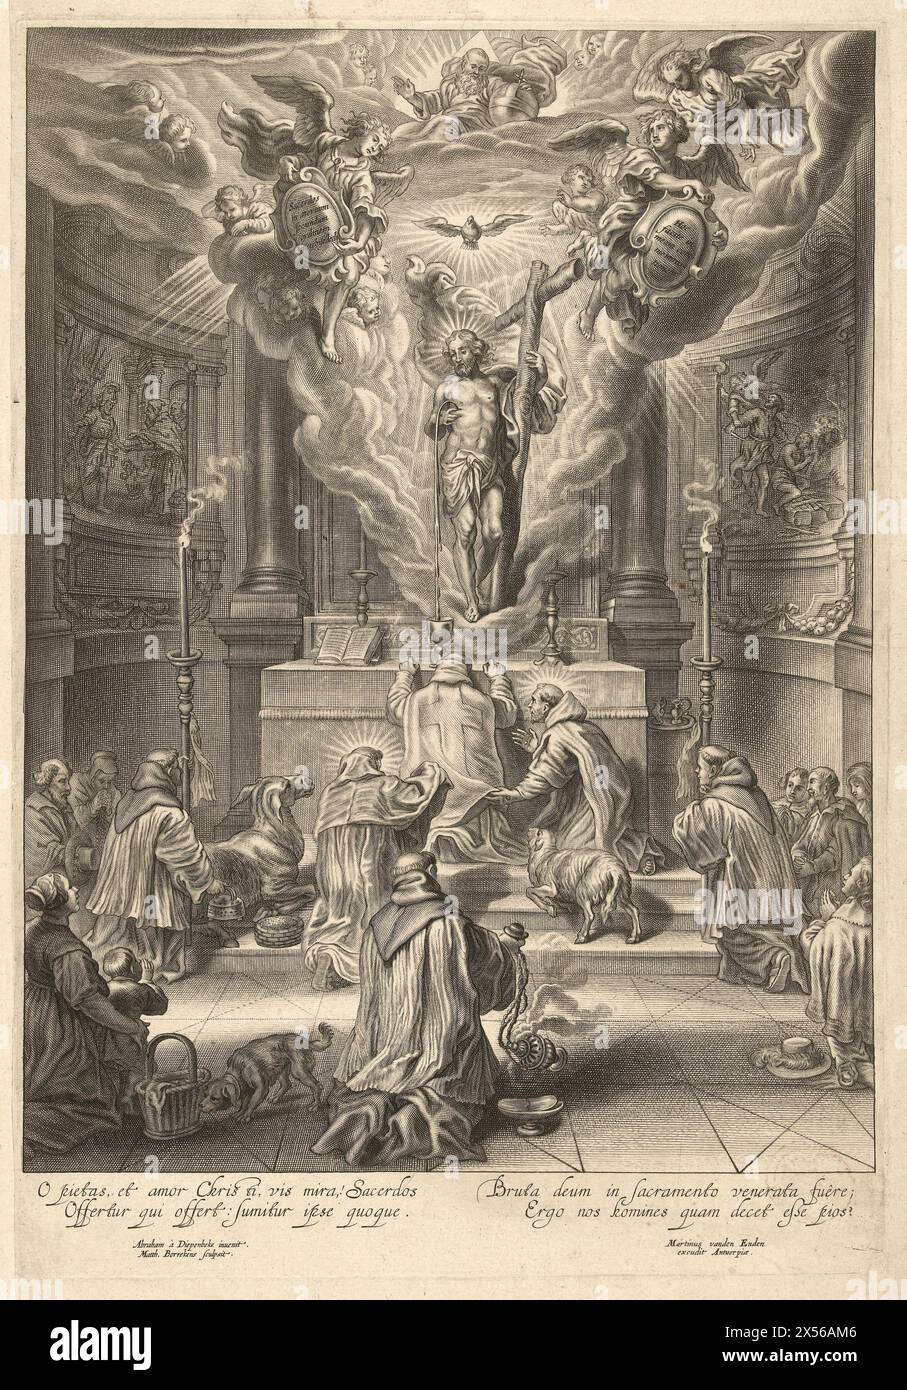 Messe de Saint Grégoire avec l'apparition du Christ, Mattheus Borrekens, d'après Abraham van Diepenbeeck, 1625 - 1670 Banque D'Images